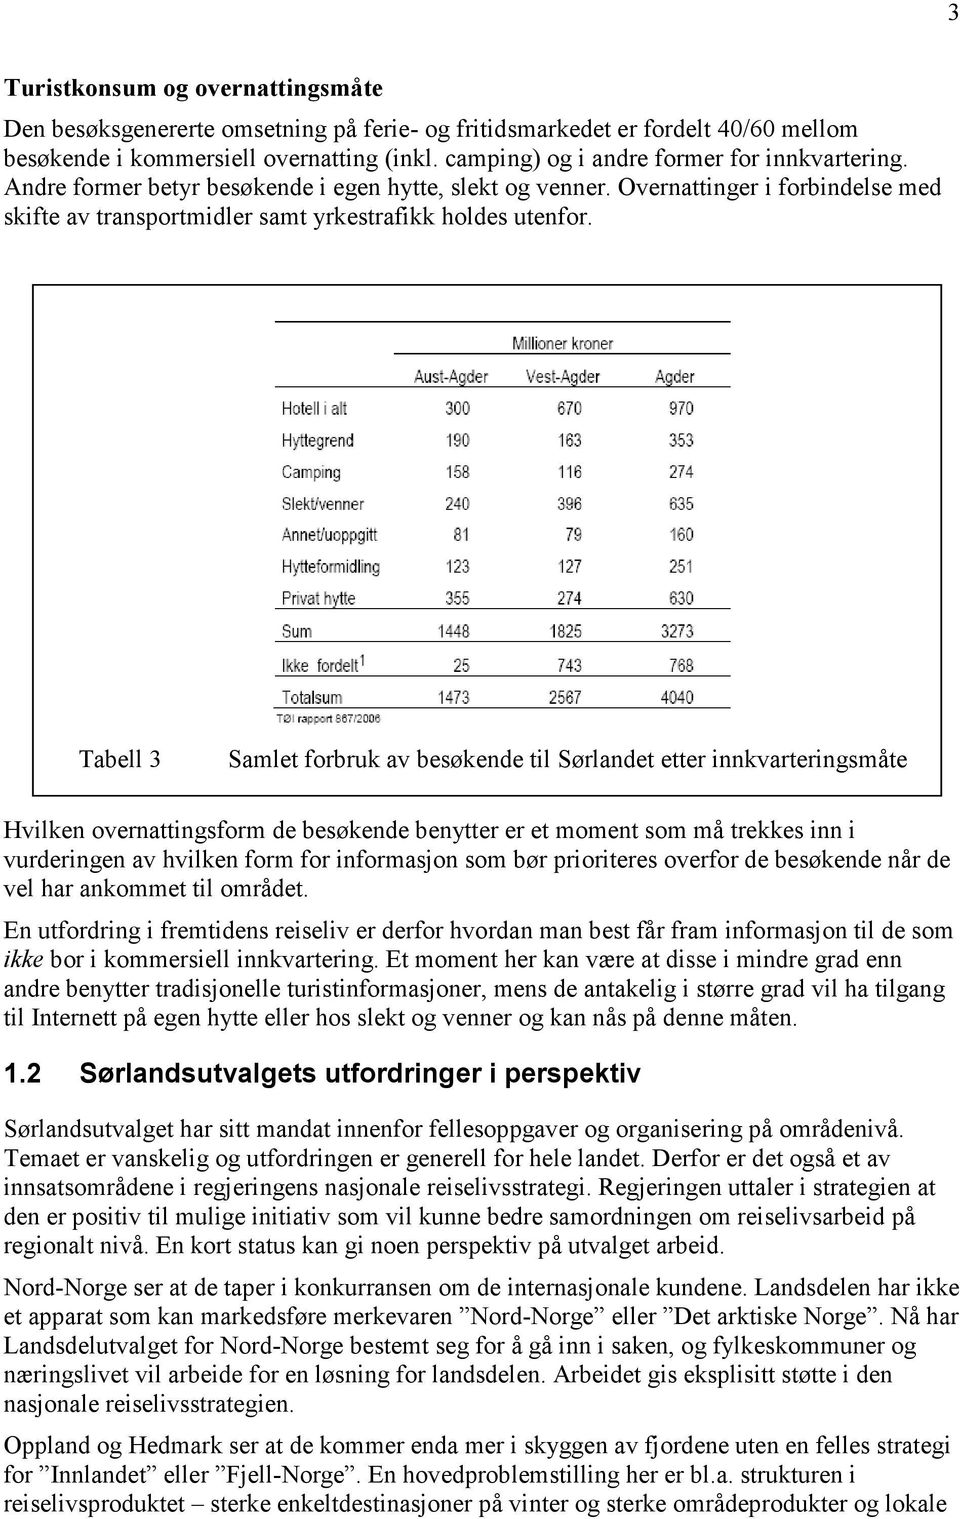 Tabell 3 Samlet forbruk av besøkende til Sørlandet etter innkvarteringsmåte Hvilken overnattingsform de besøkende benytter er et moment som må trekkes inn i vurderingen av hvilken form for